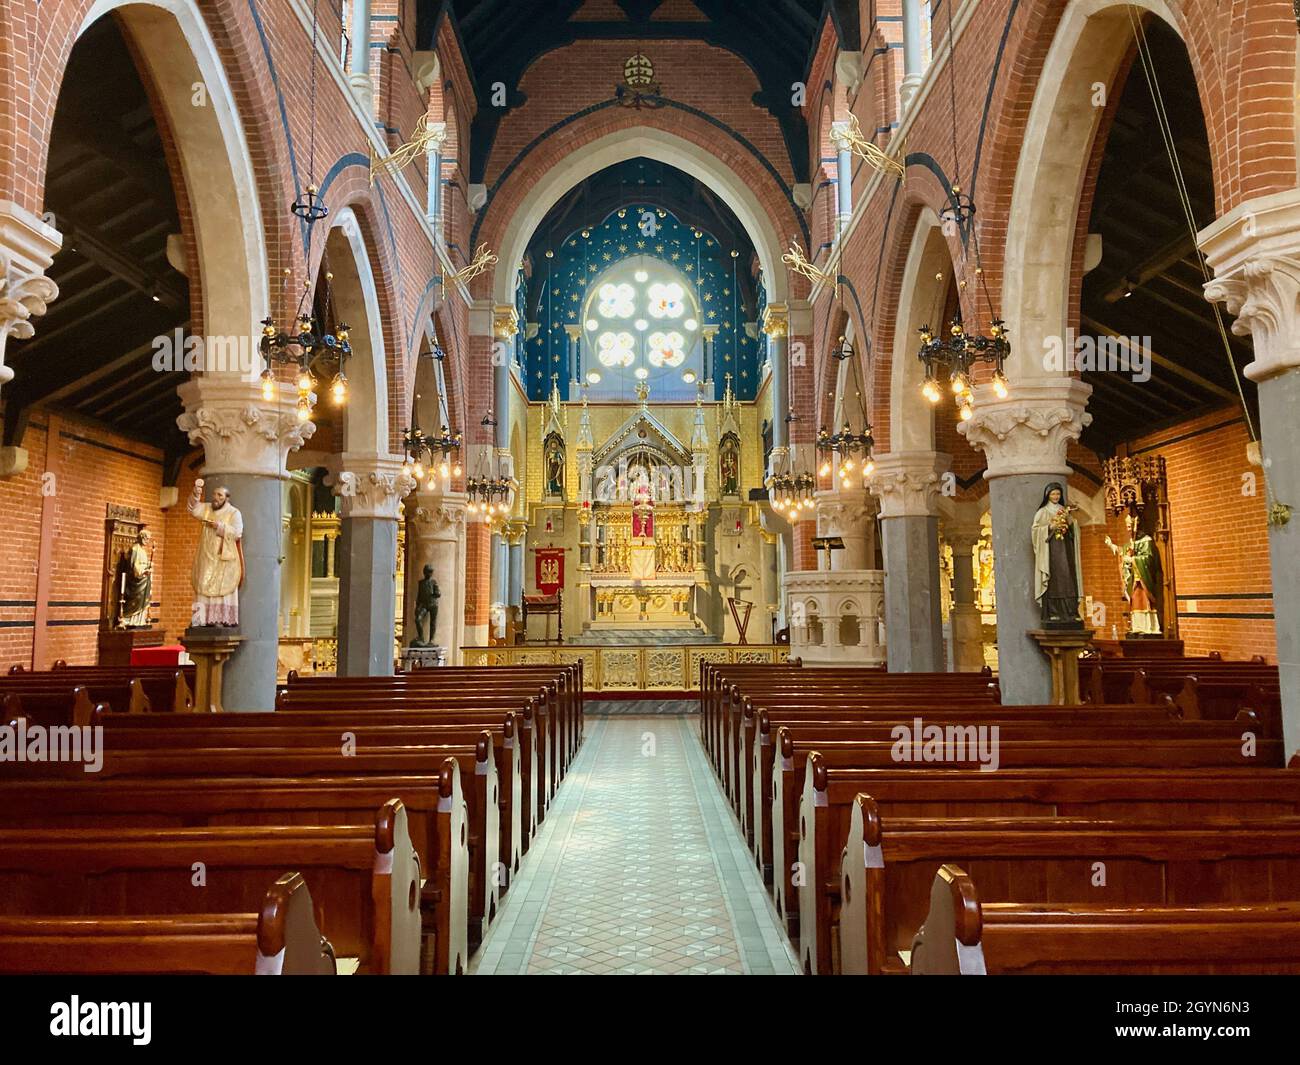 Chiesa cattolica del Corpus Christi, Santuario del Santissimo Sacramento a Covent Garden, Londra. Classificato di grado 2, architettura in stile gotico inglese. Foto Stock